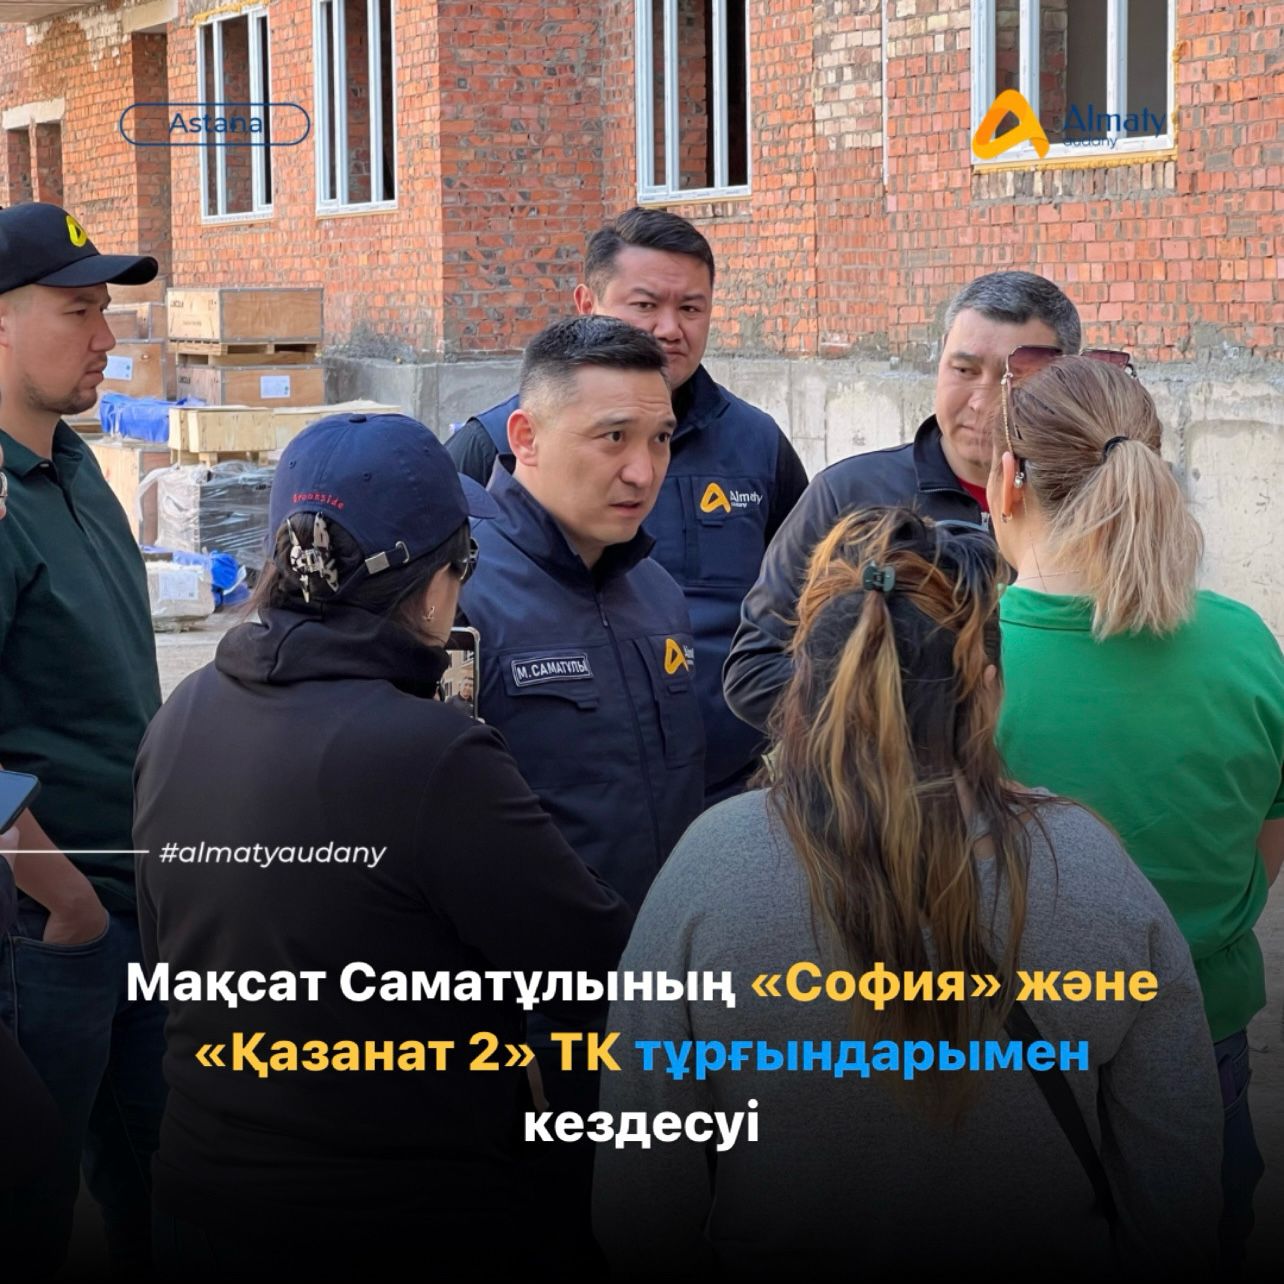 Сегодня аким района Максат Саматулы встретился с жителями домов «София» и «Казанат 2».